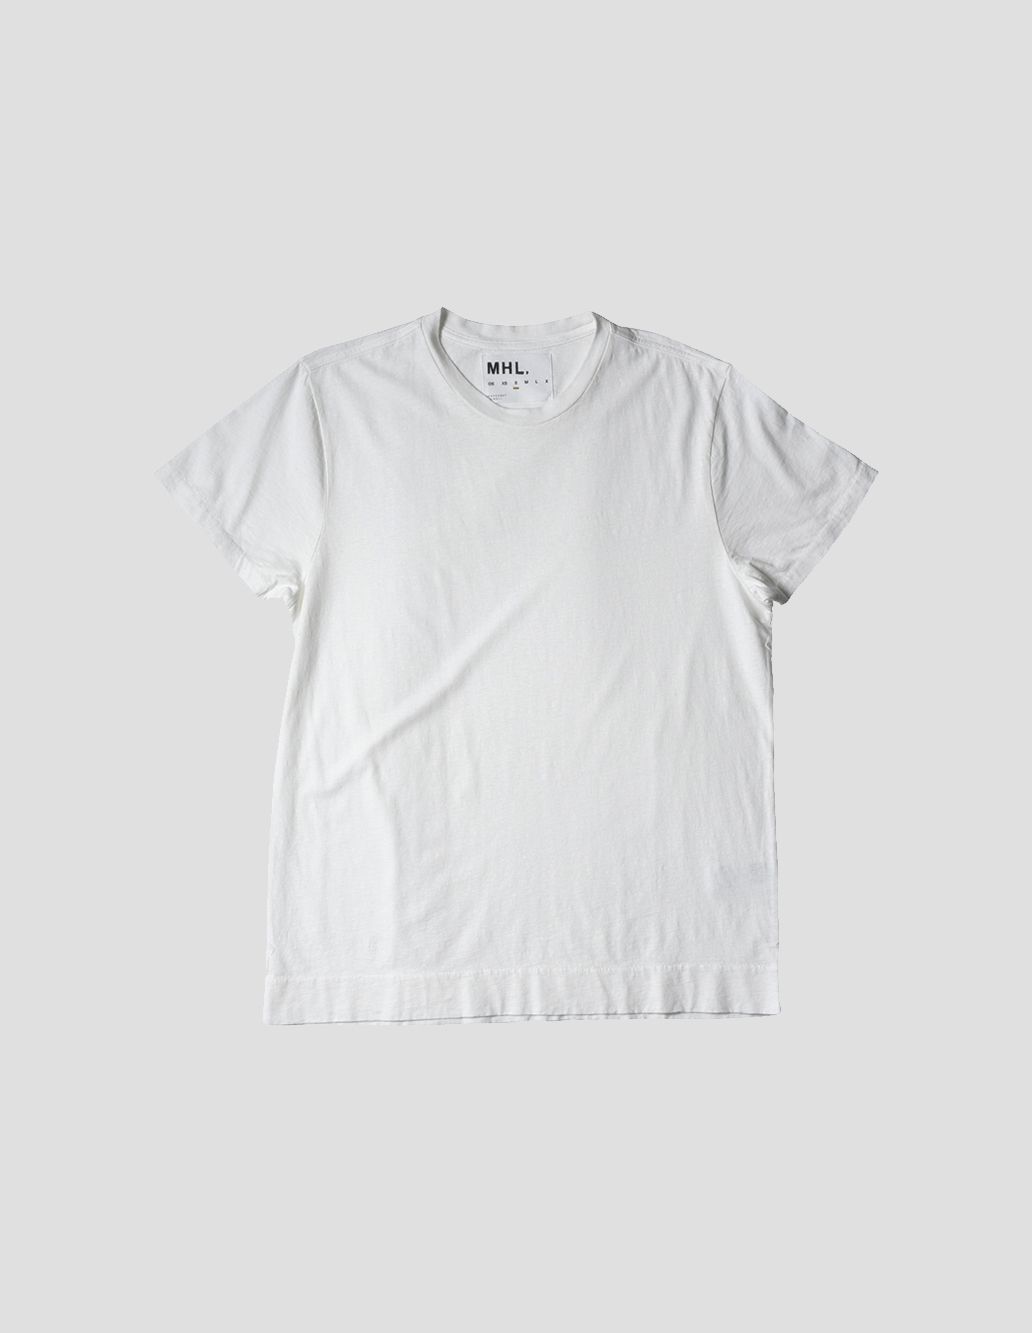 Margaret Howell White Cotton Linen Jersey T Shirt Mhl By Margaret Howell